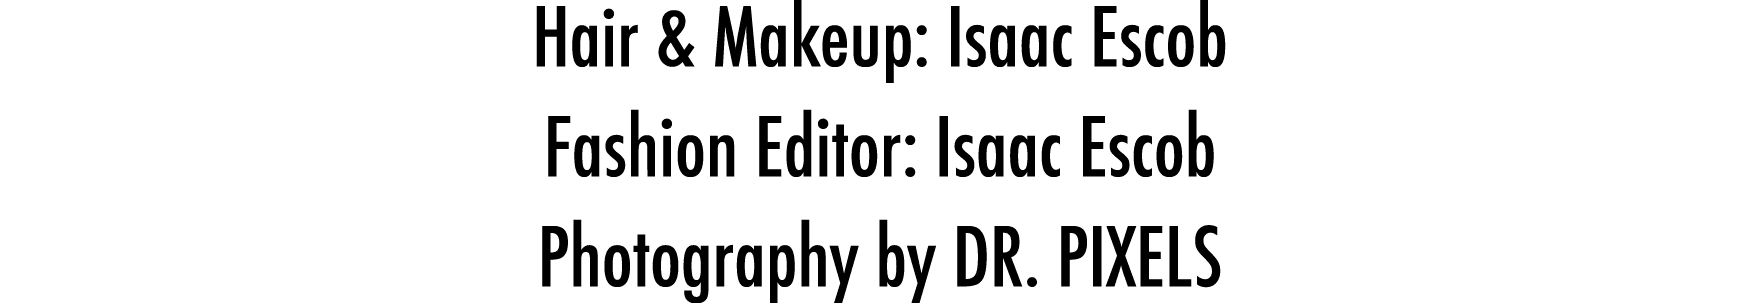 Hair & Makeup: Isaac Escob  Fashion Editor: Isaac Escob  Photography by DR  PIXELS